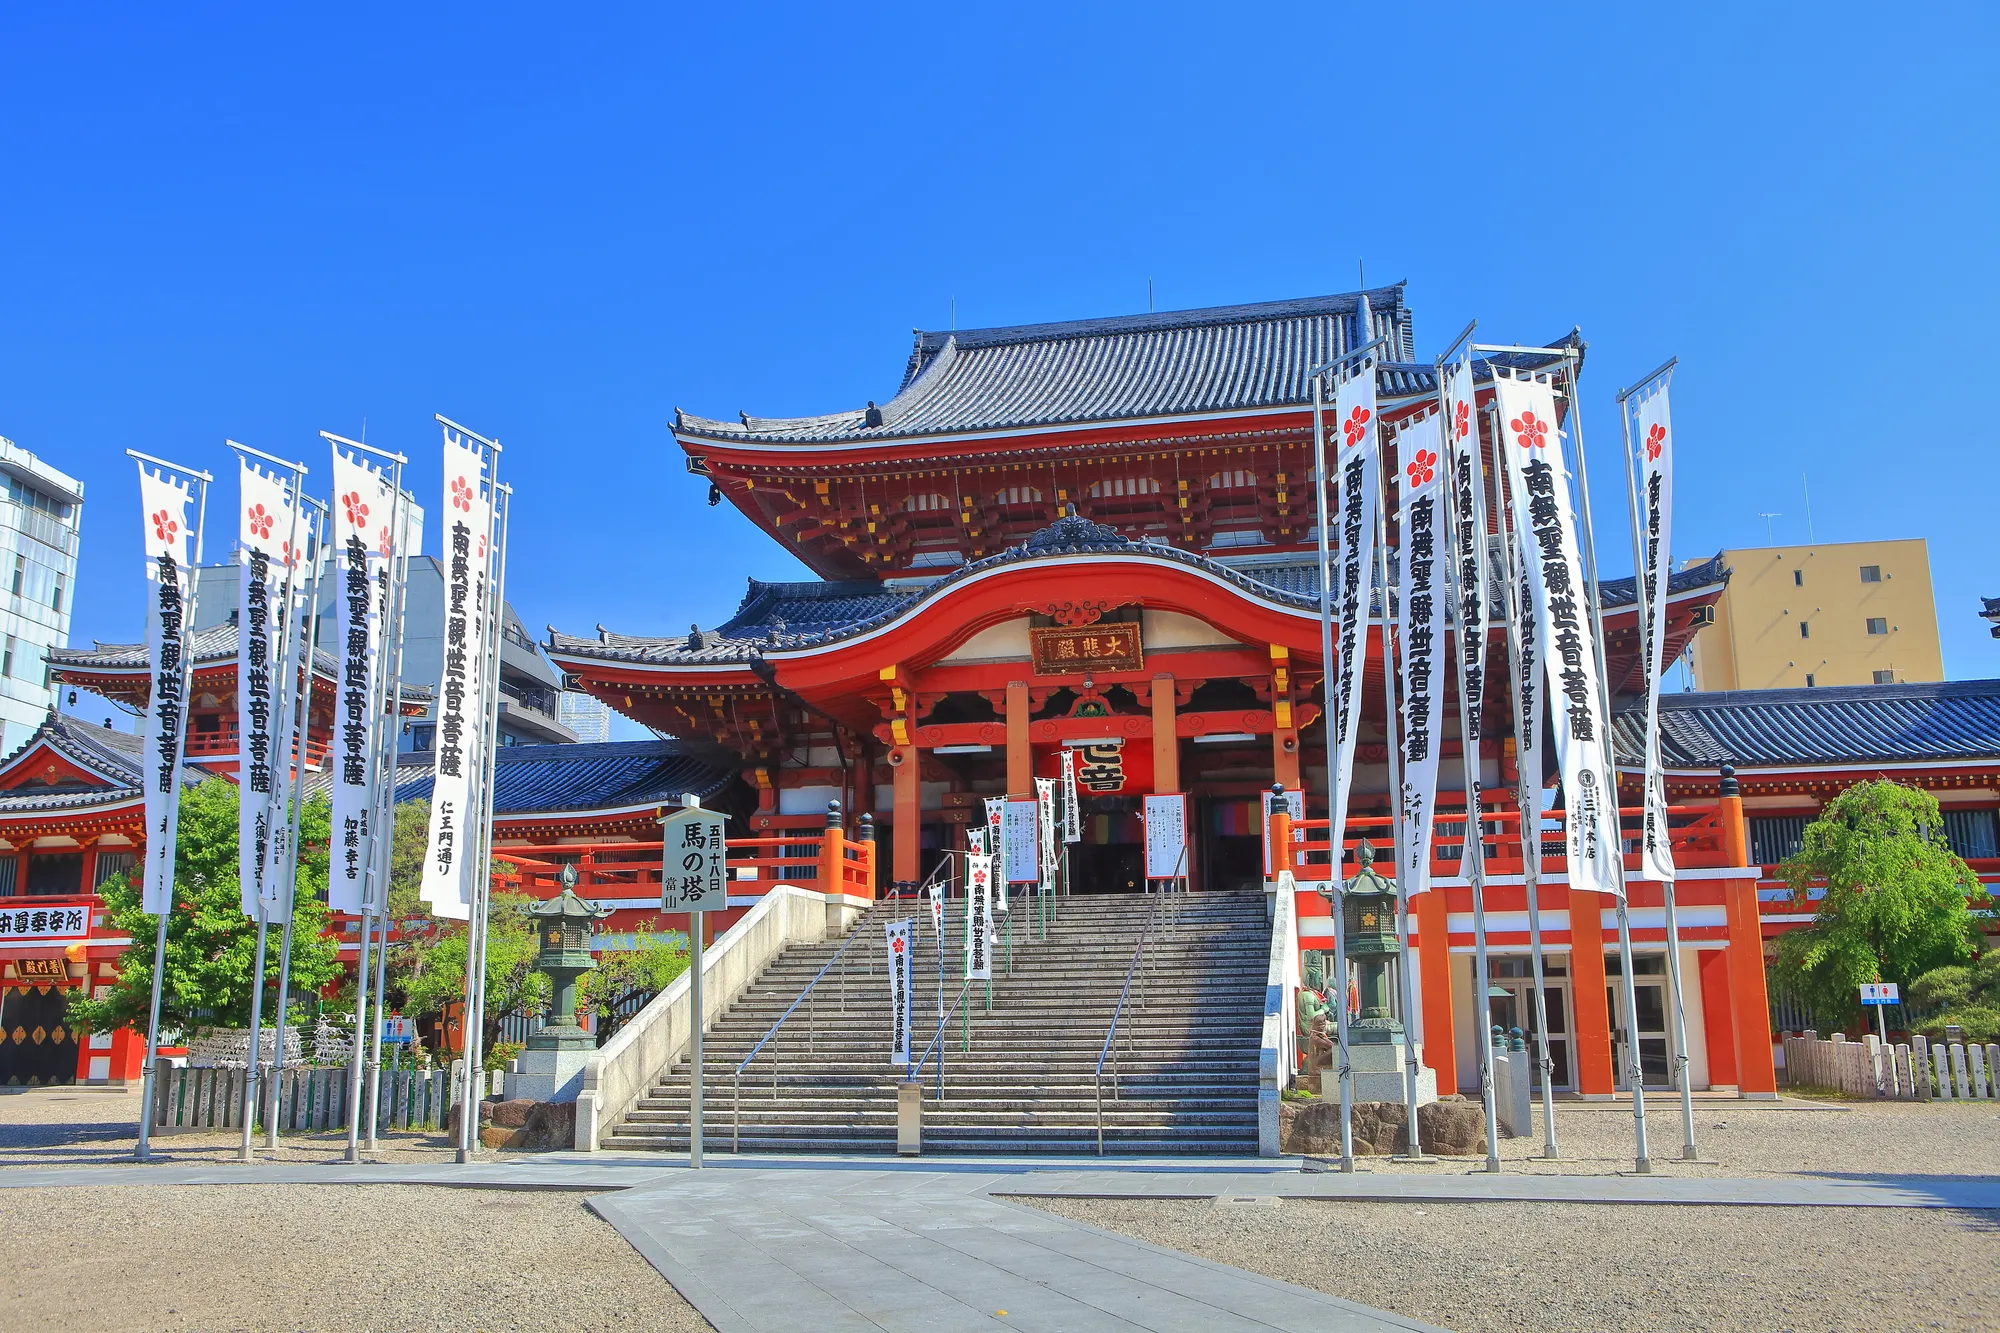 日本一神社仏閣が多い愛知県 名古屋のおすすめパワースポット10選 Relux Journal